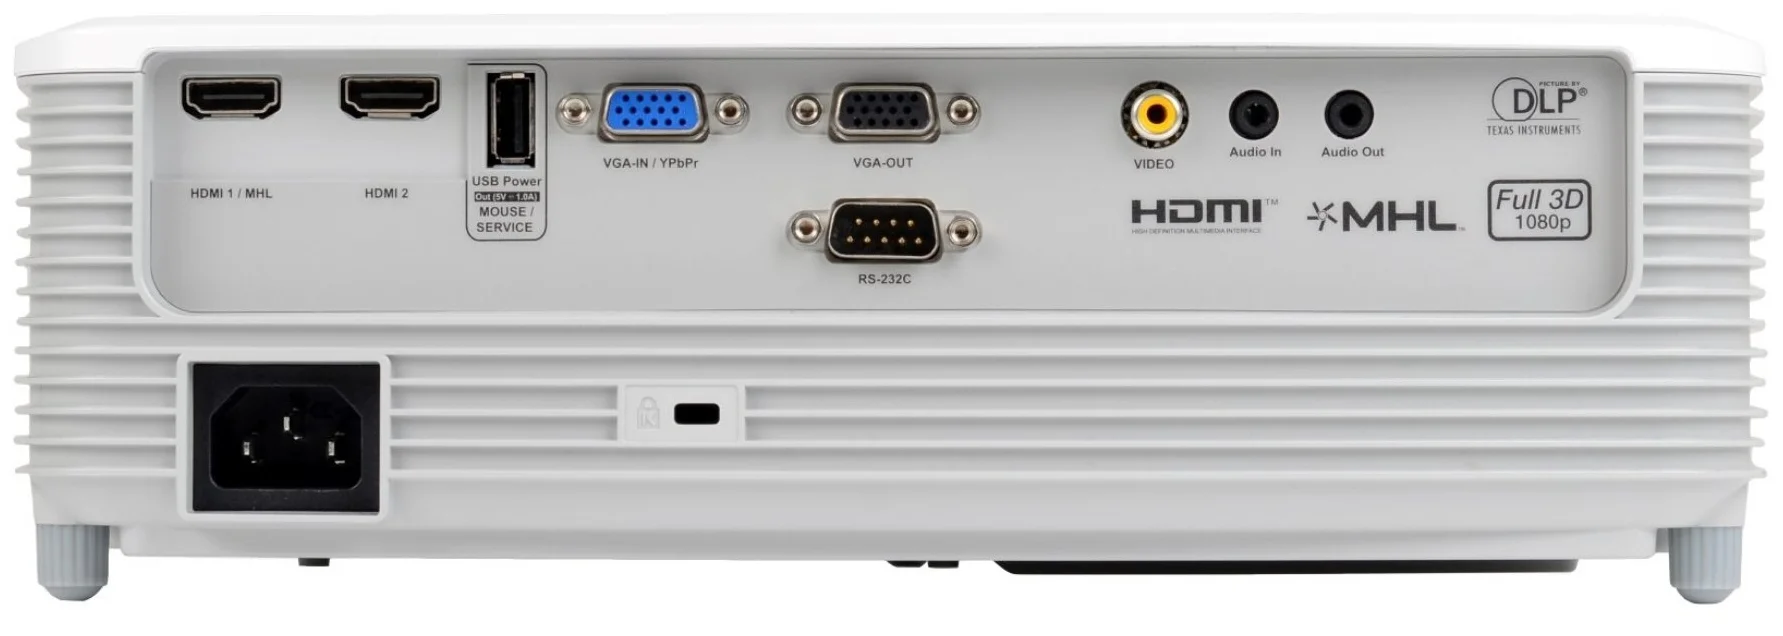 Optoma EH400 - разрешение проектора: 1920x1080 (Full HD)